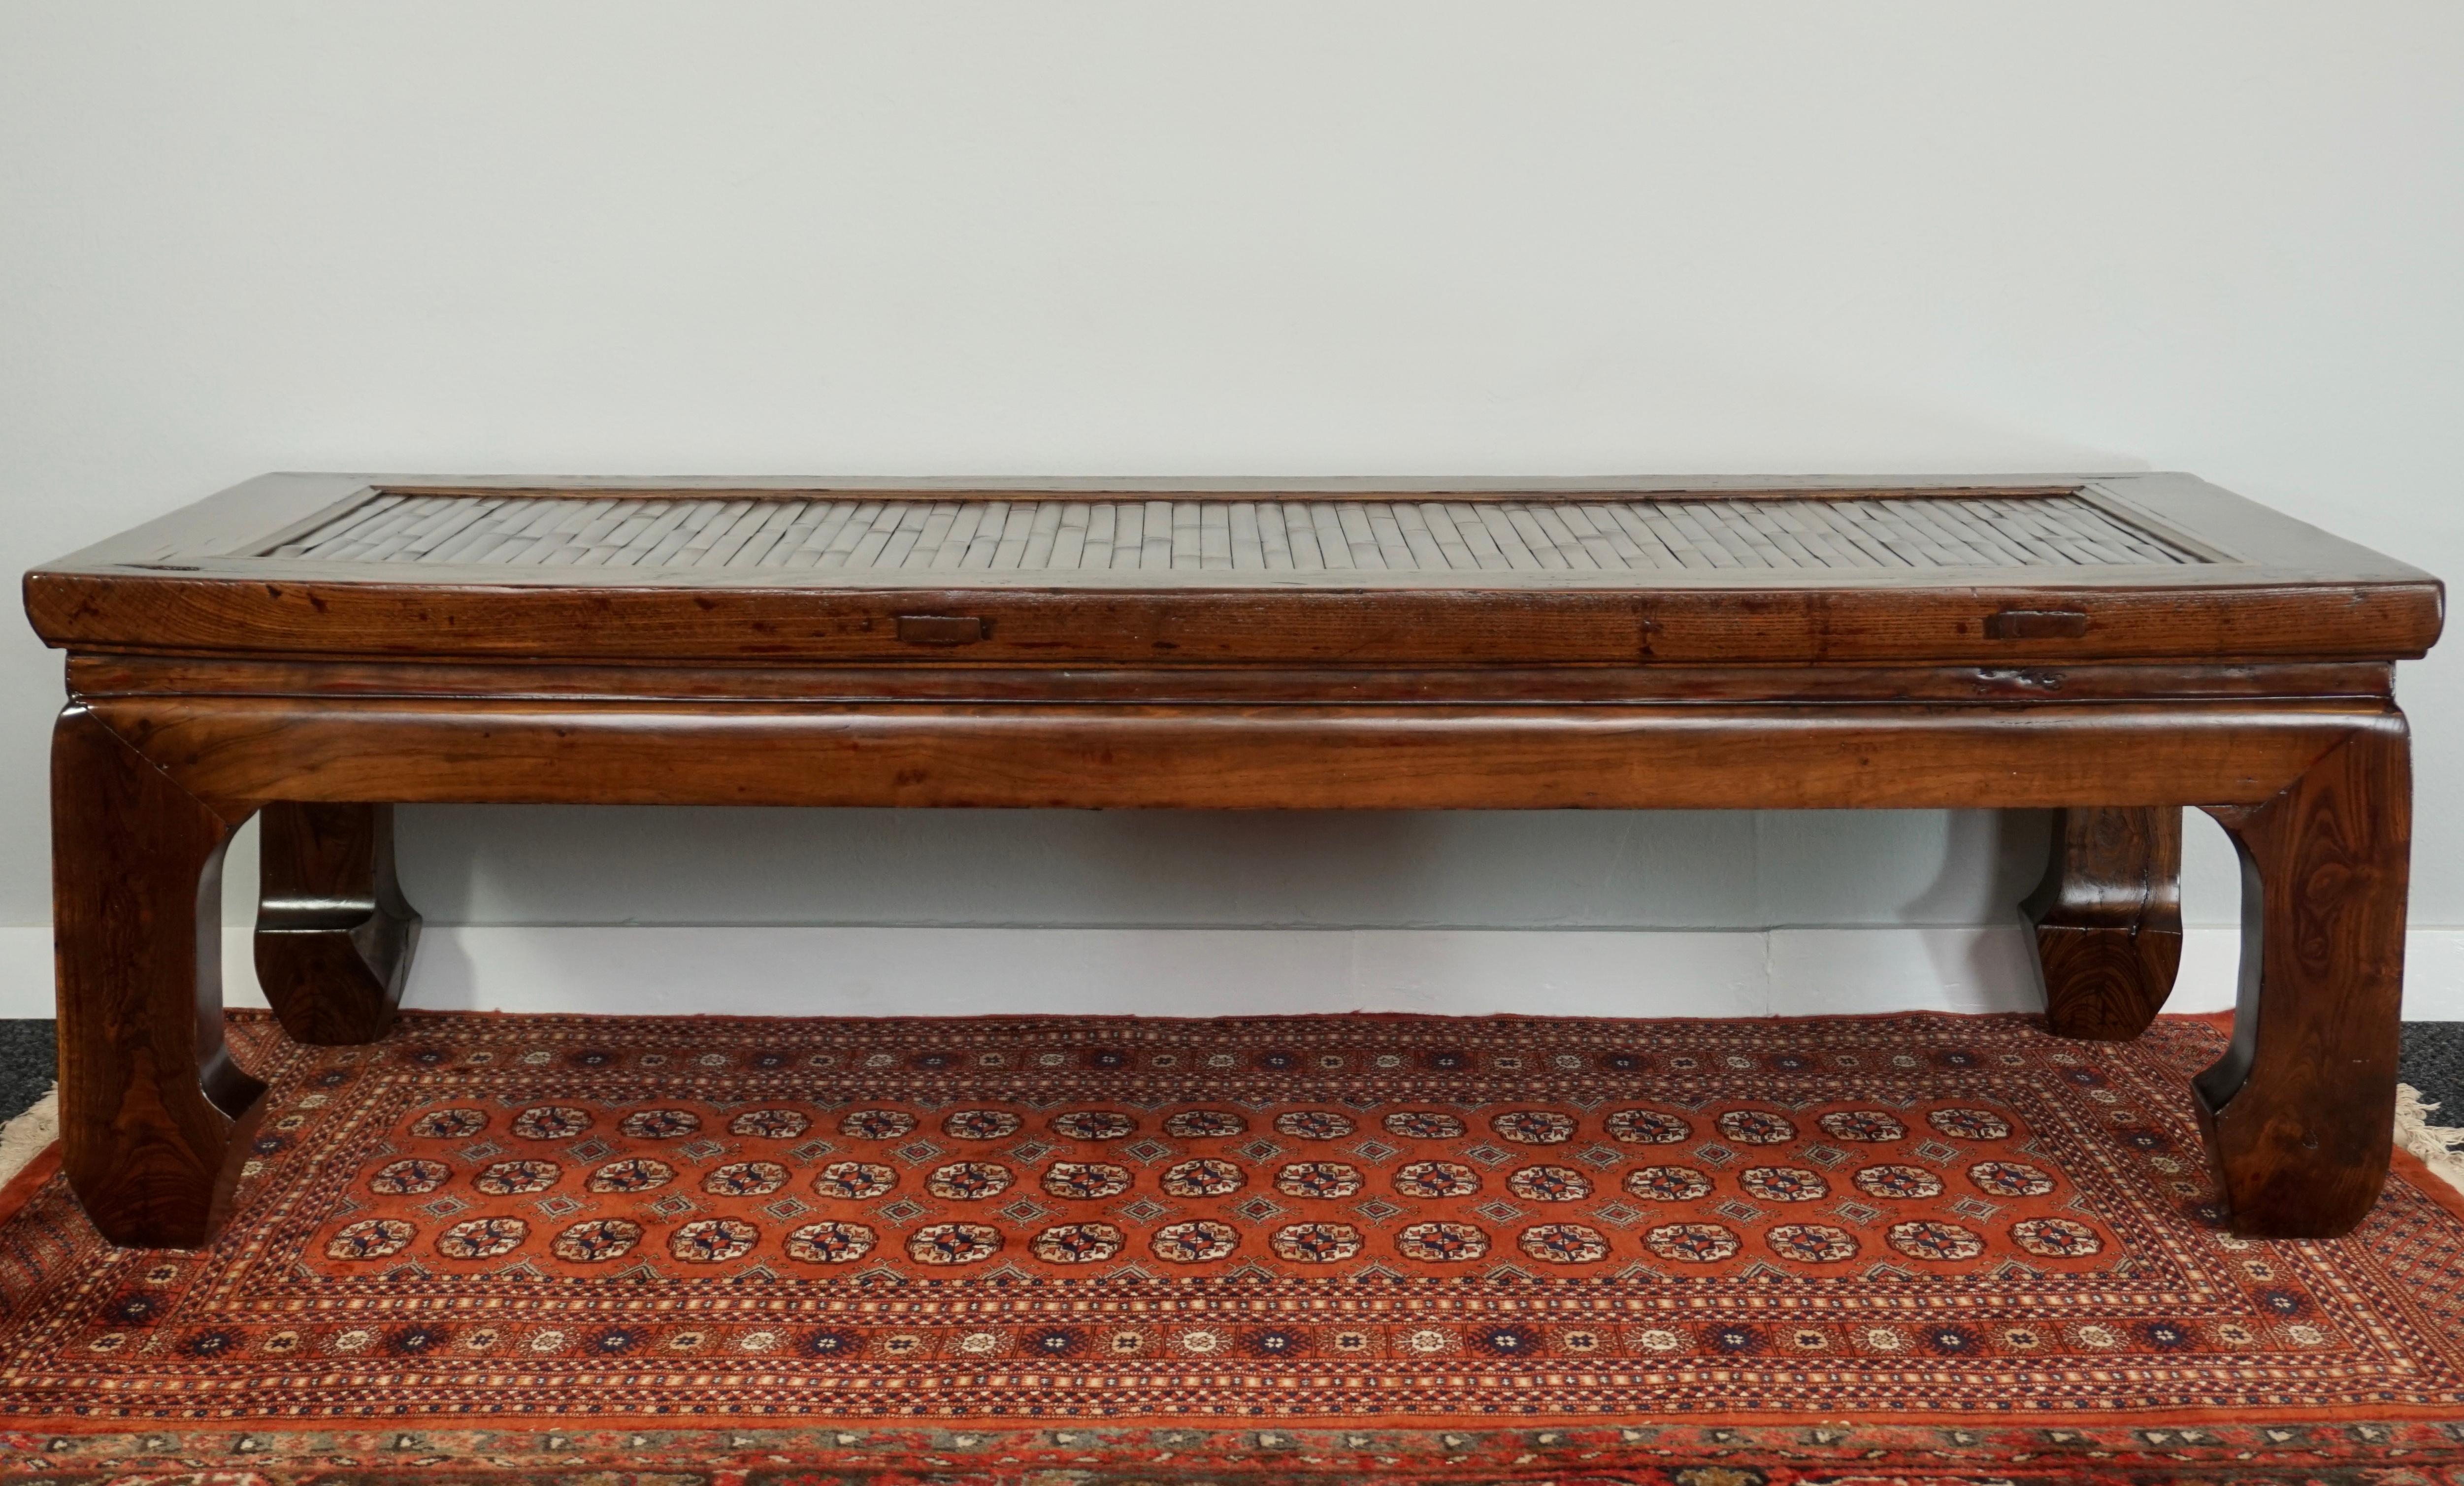 Un magnifique lit à opium en bois d'orme massif et en bambou de taille parfaite qui fait une table basse parfaite. Il s'agit d'un lit réel qui était utilisé en Chine il y a plus de cent ans. Le terme 